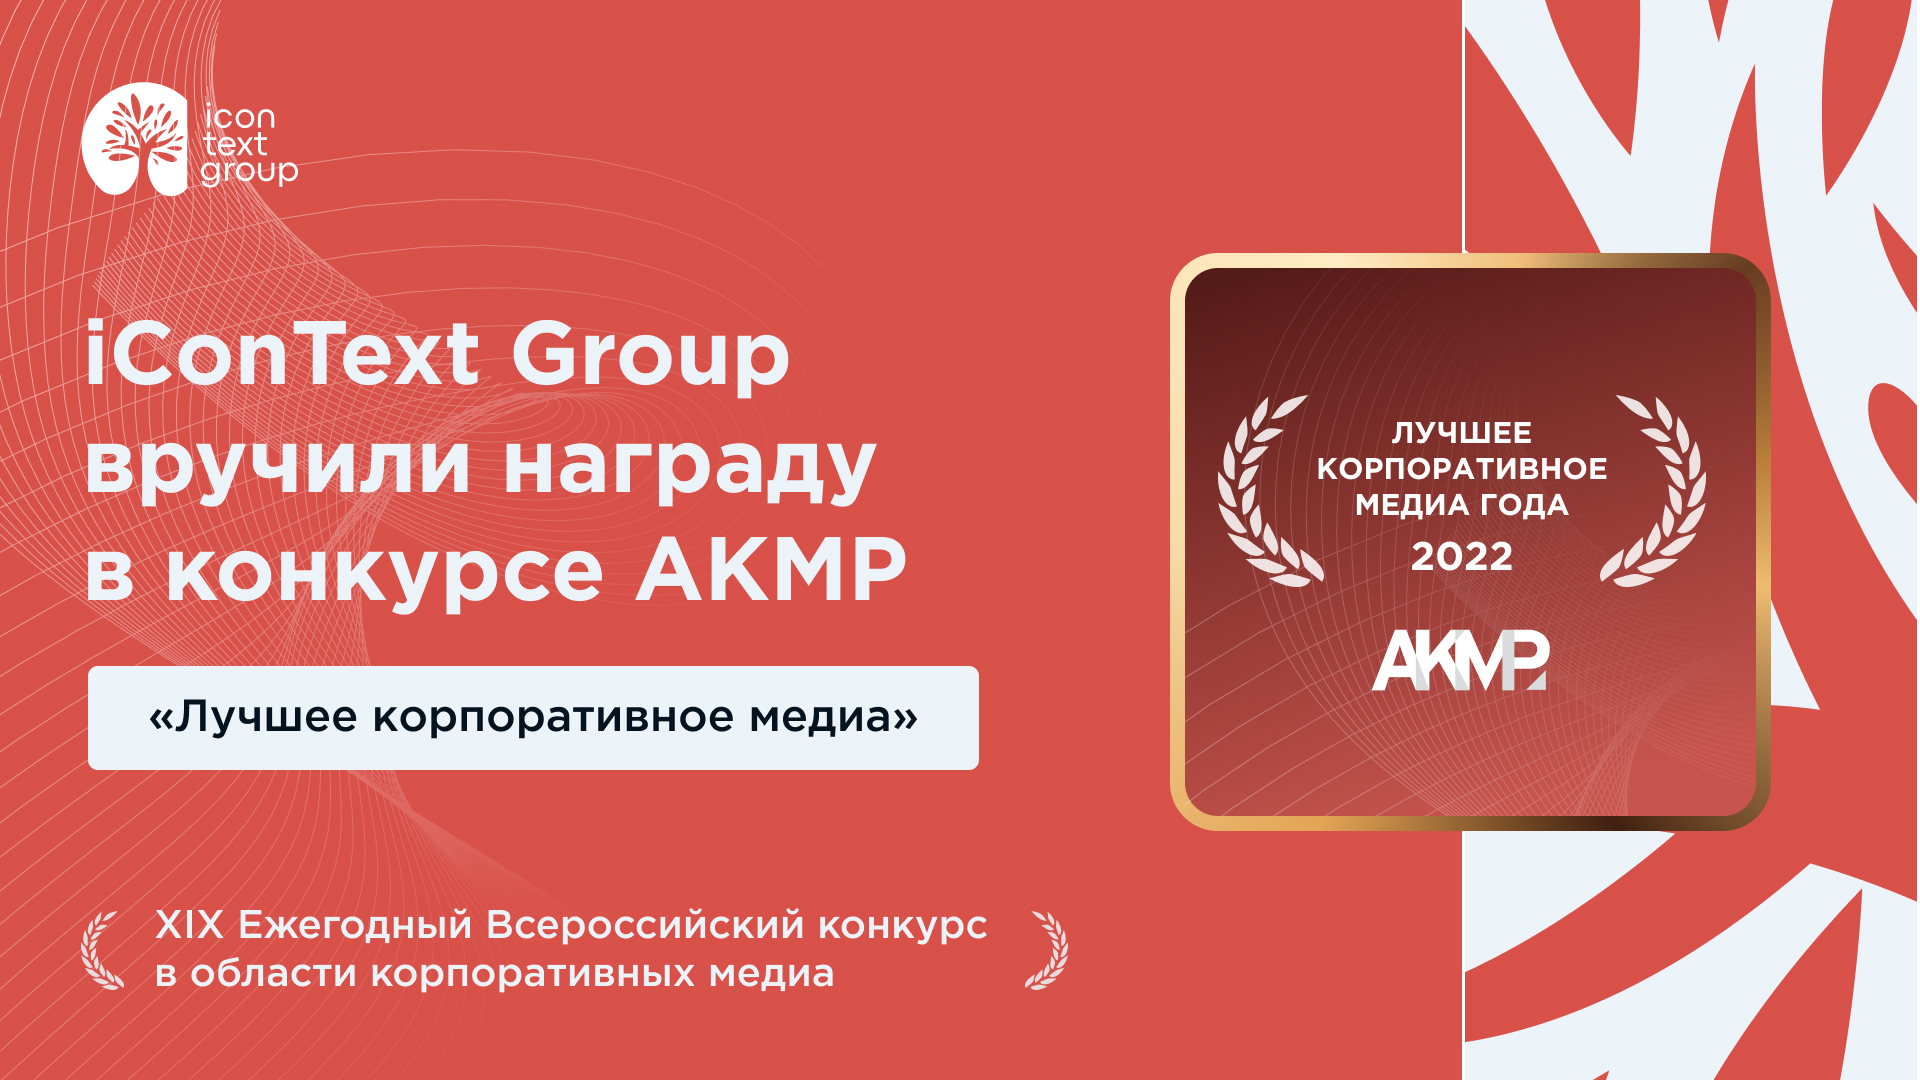 iConText Group — победитель Всероссийского конкурса АКМР «Лучшее корпоративное медиа»